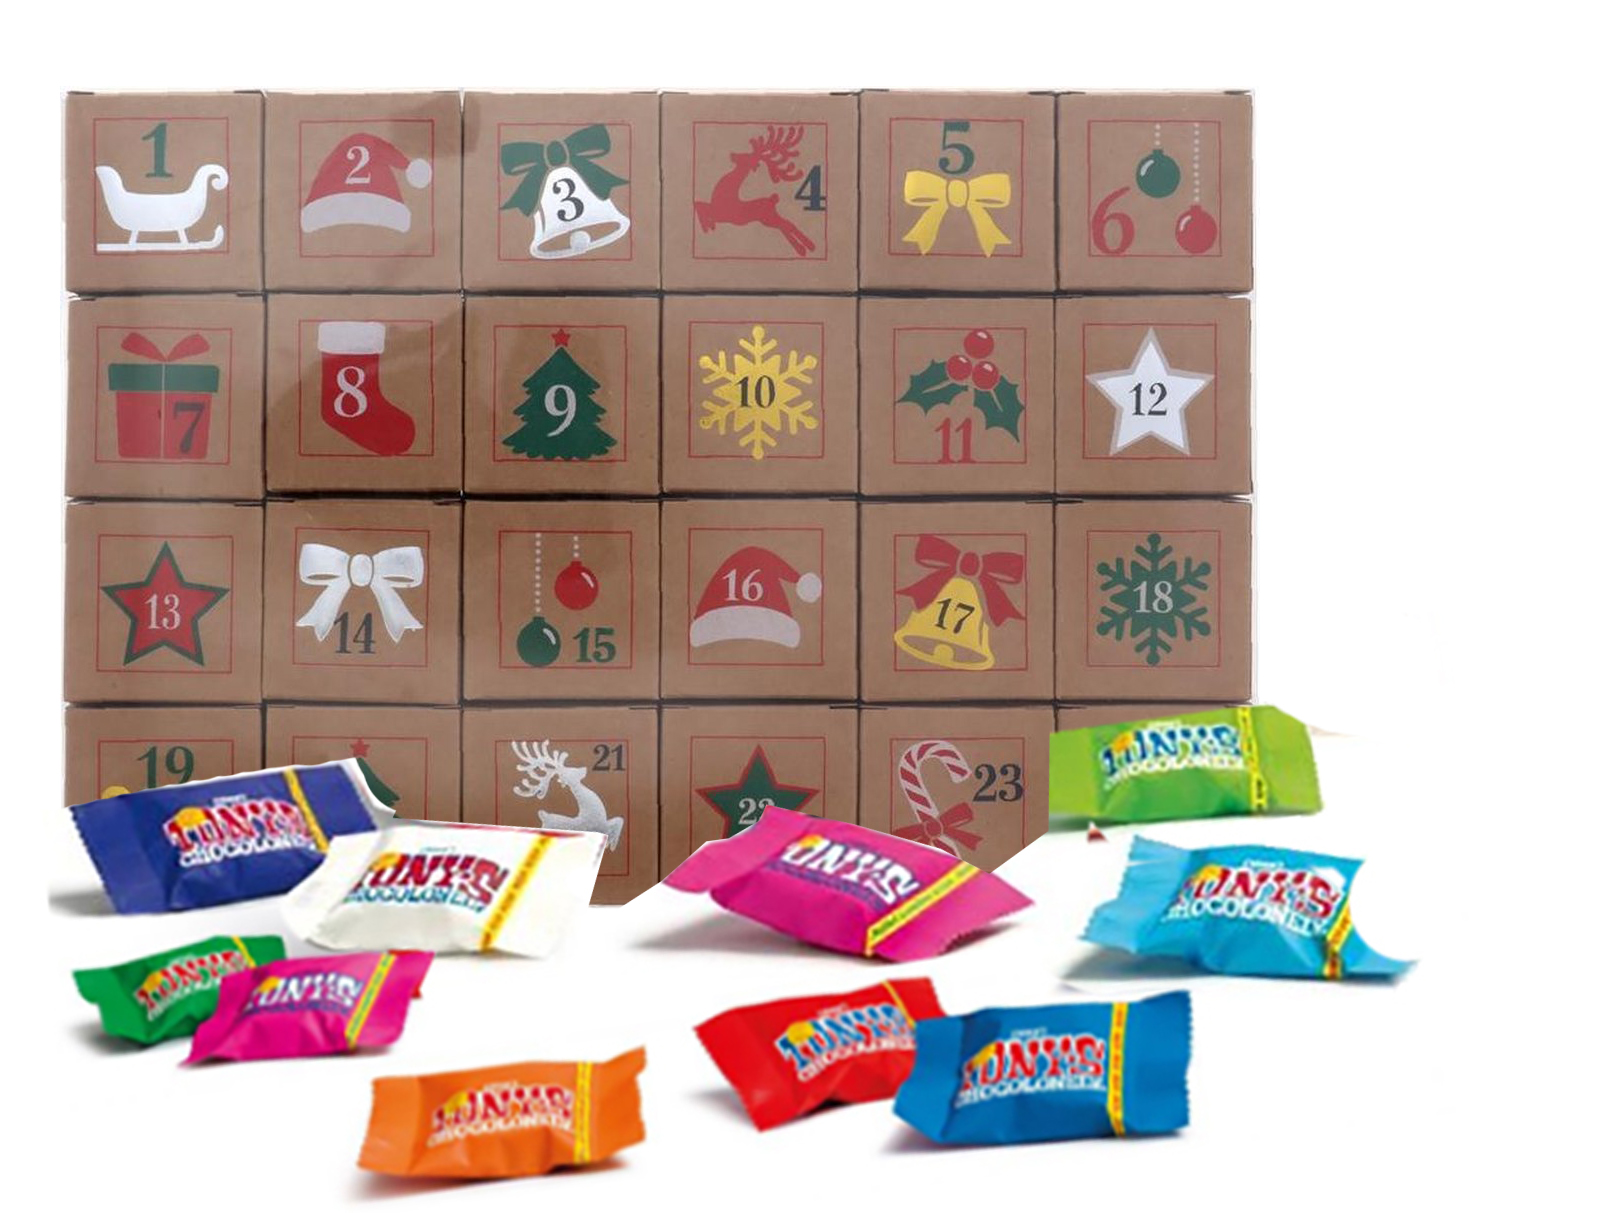 Advent kalender met heerlijke Tony chocolonely Tiny Tony chocolade, voor elk doosje 1 | Cadeau / Kerst